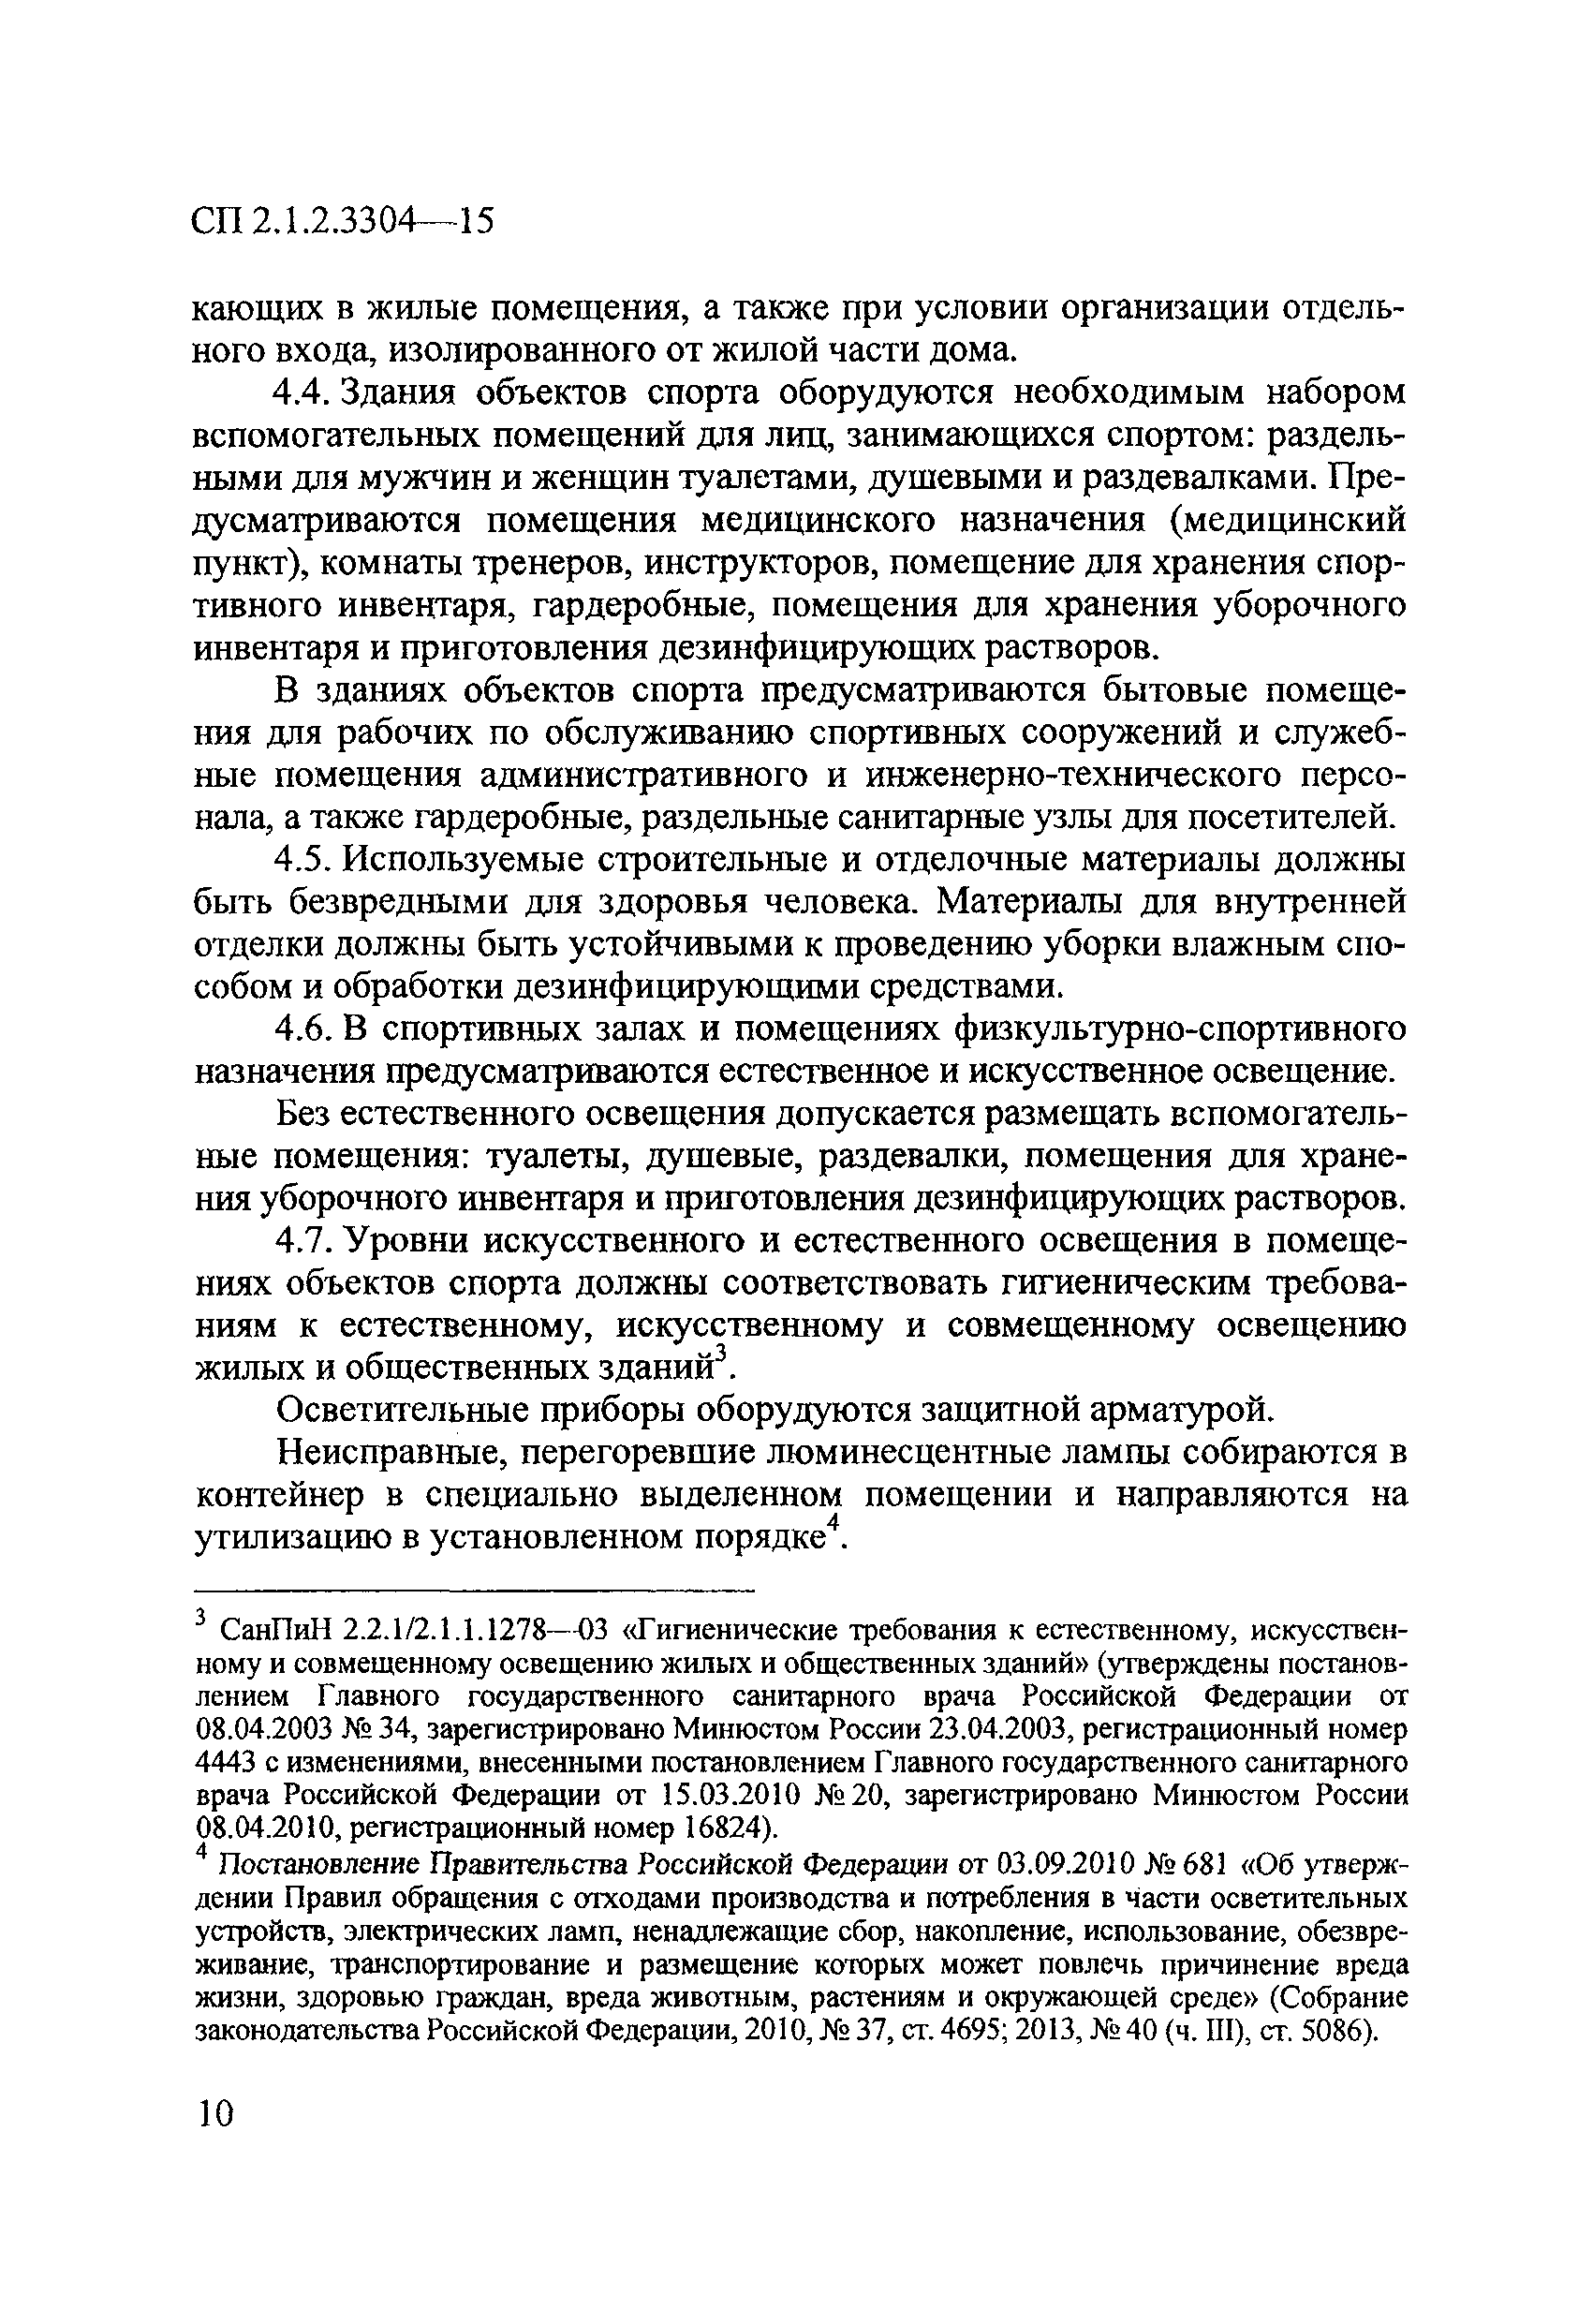 СП 2.1.2.3304-15